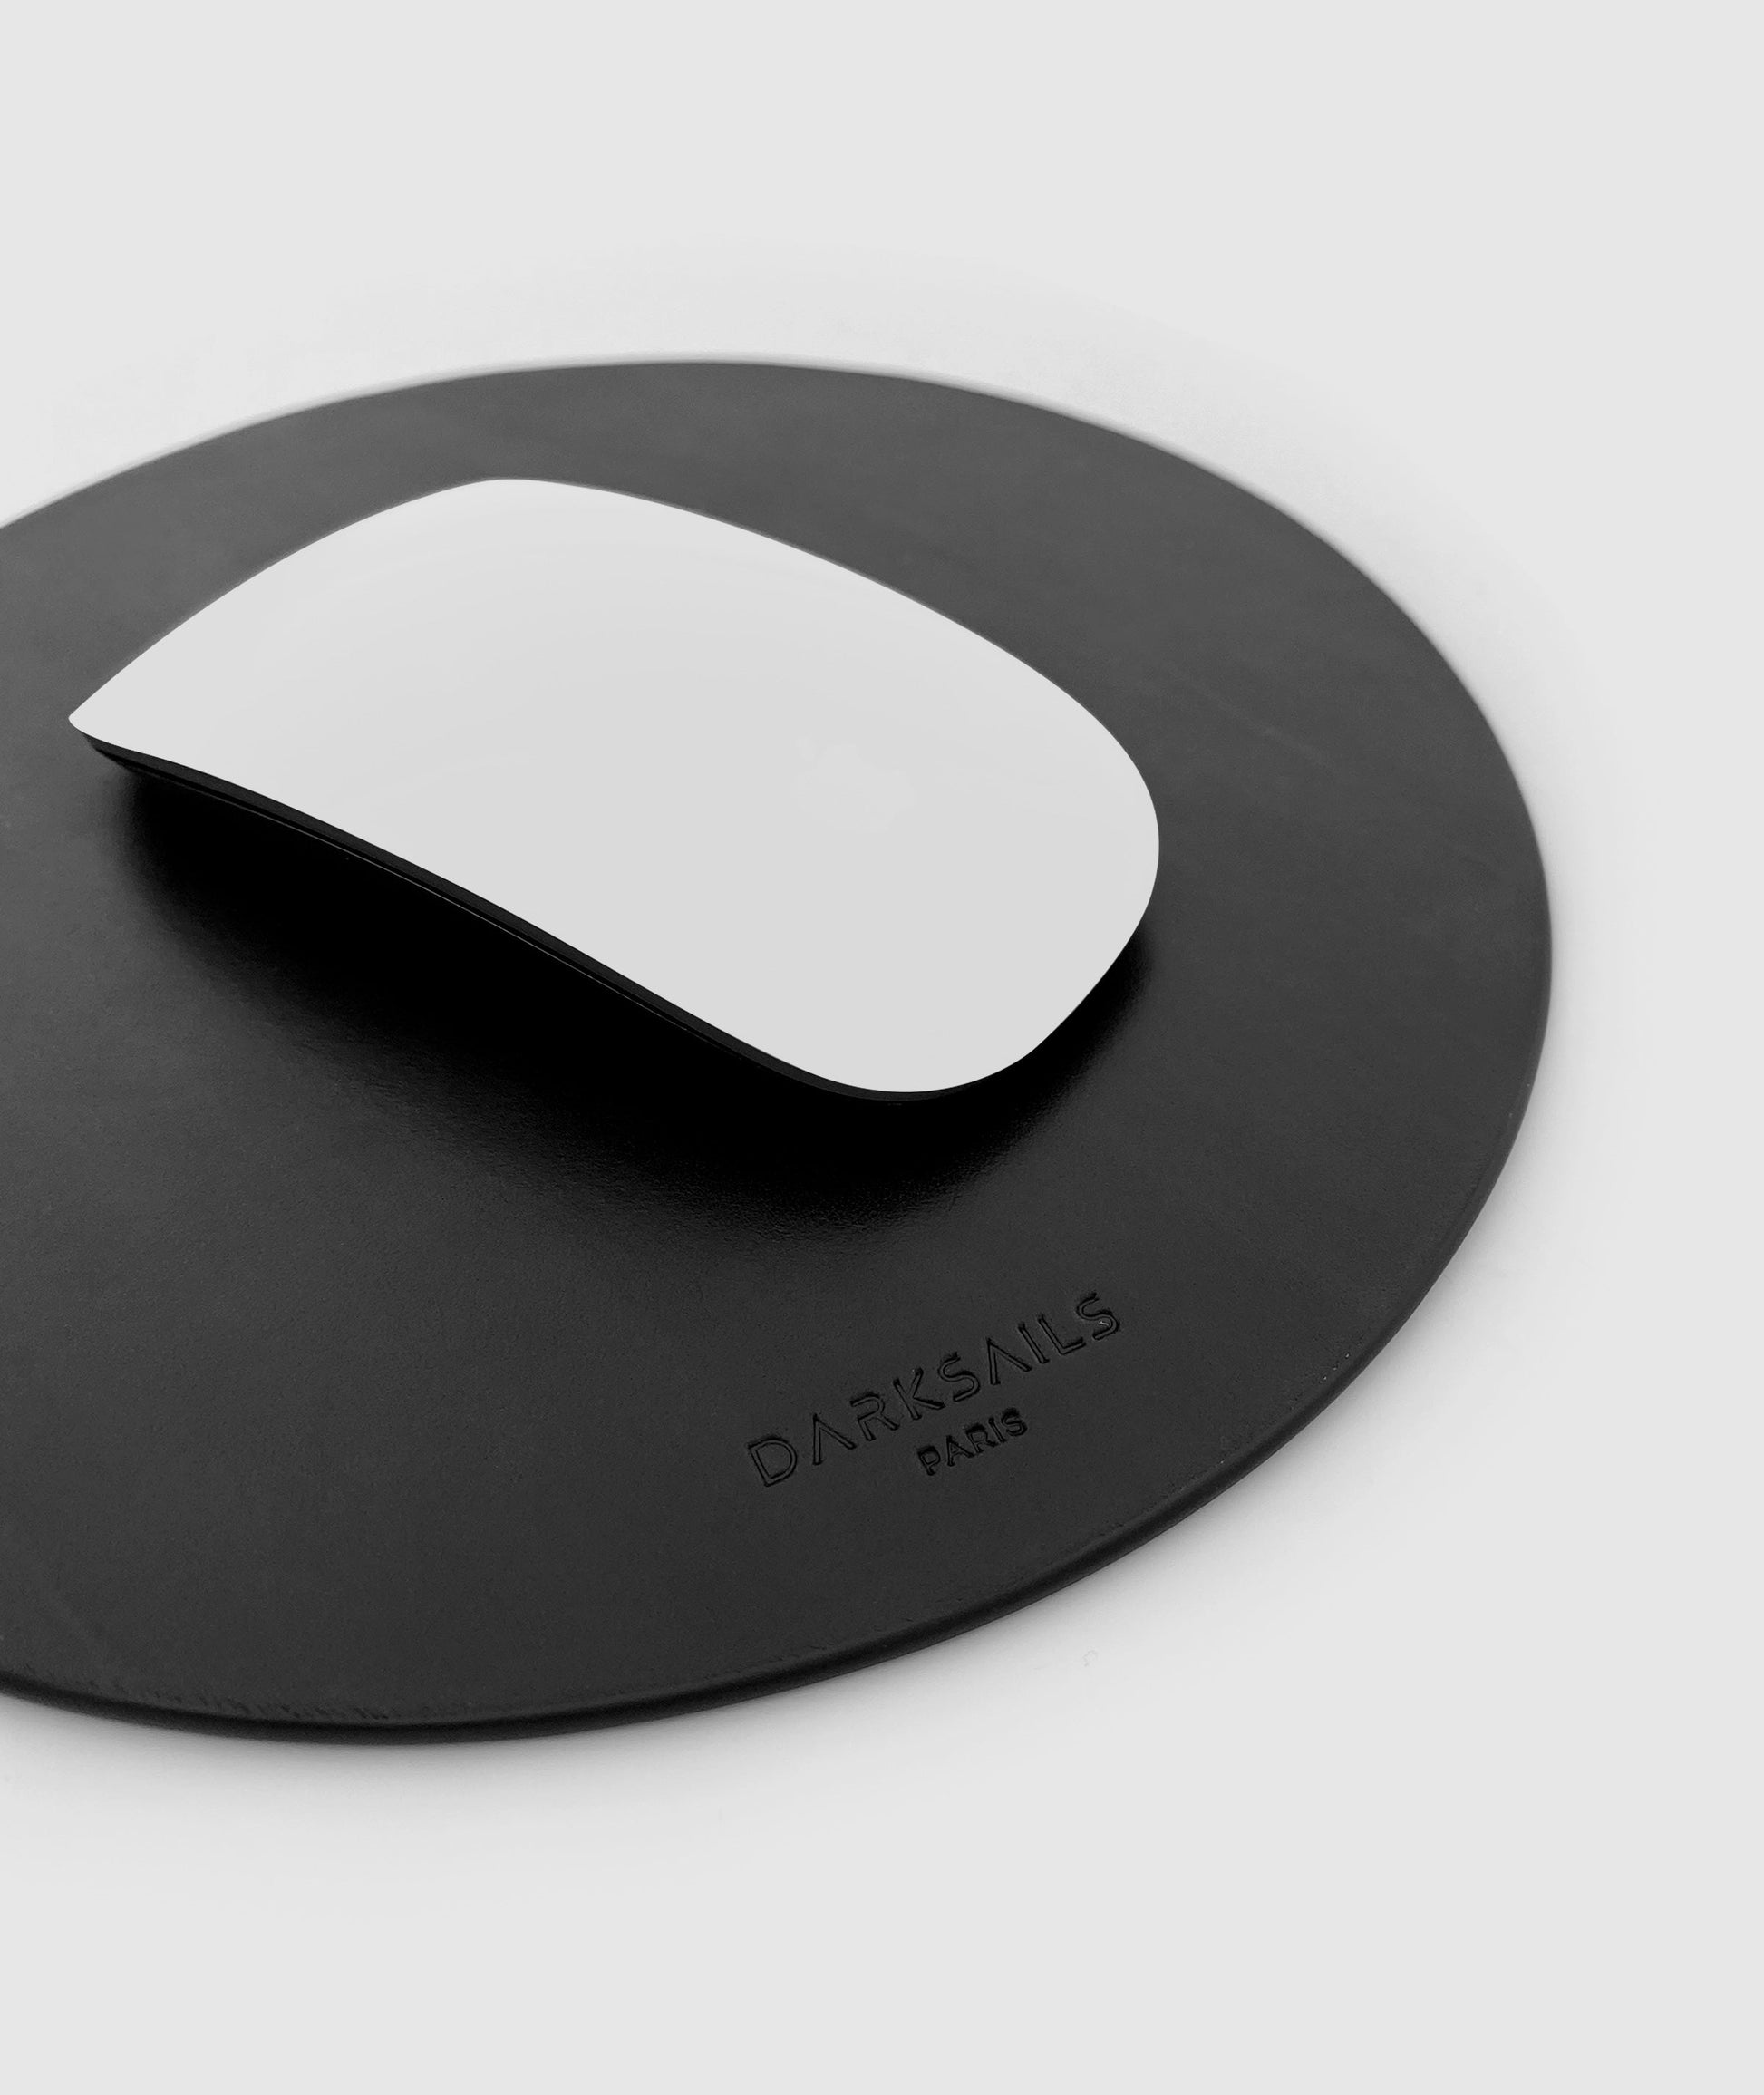 Black round leather mouse pad by darksails - tapis de souris rond en cuir noir fait main